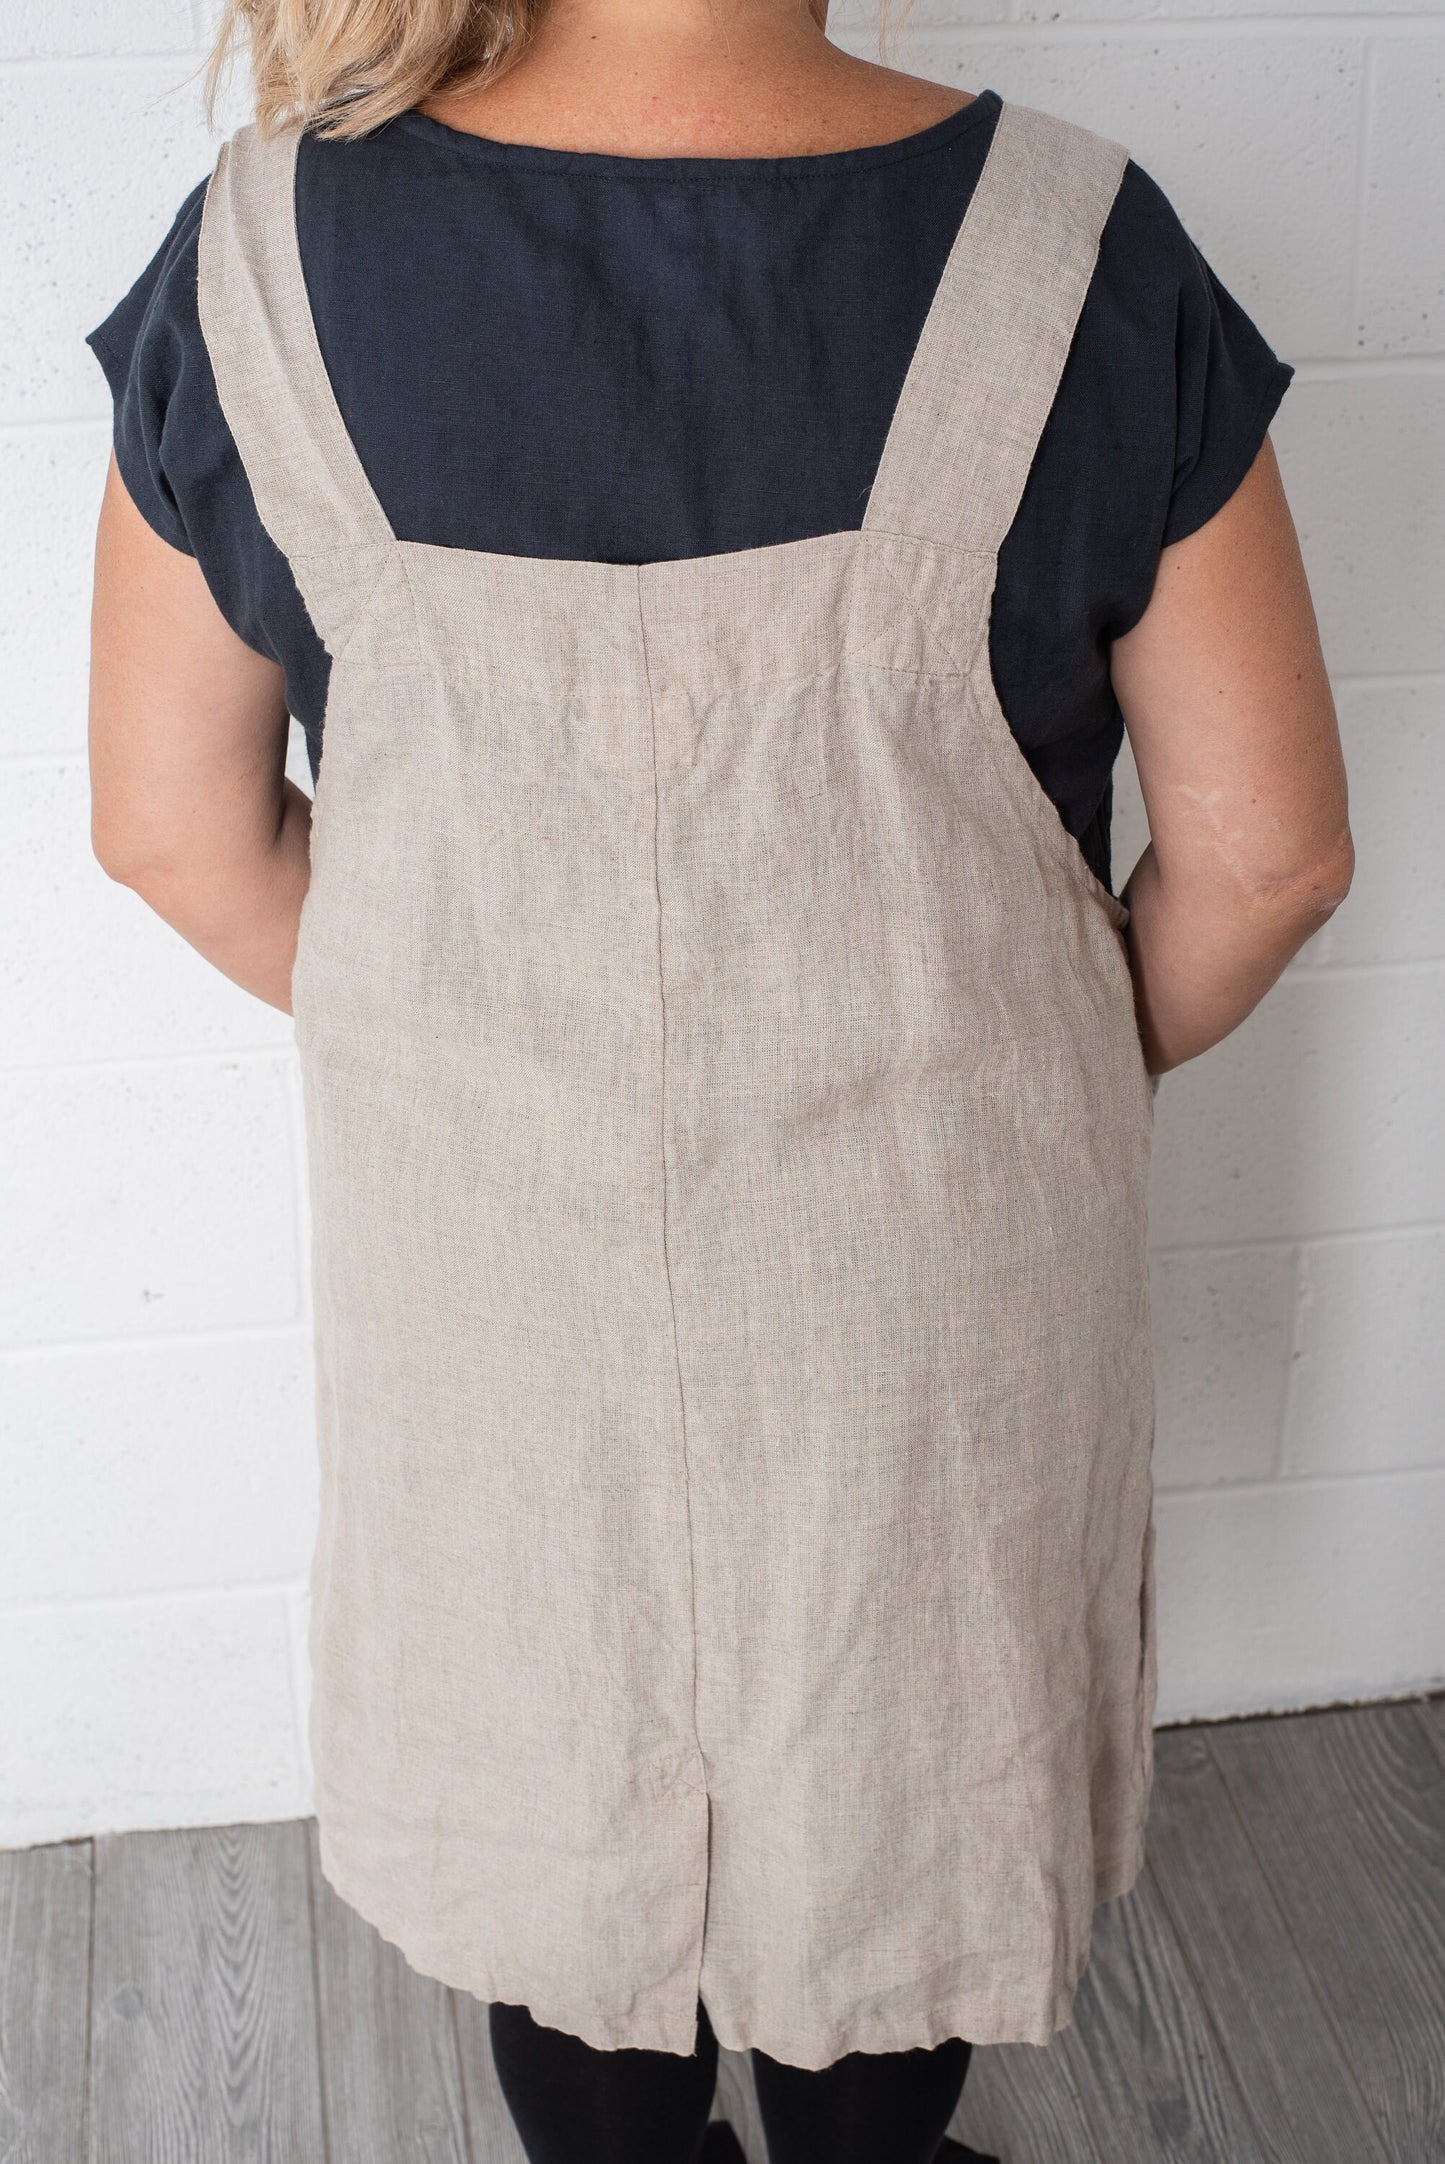 Medium-weight linen garden dress, crafted from 100% European flax.